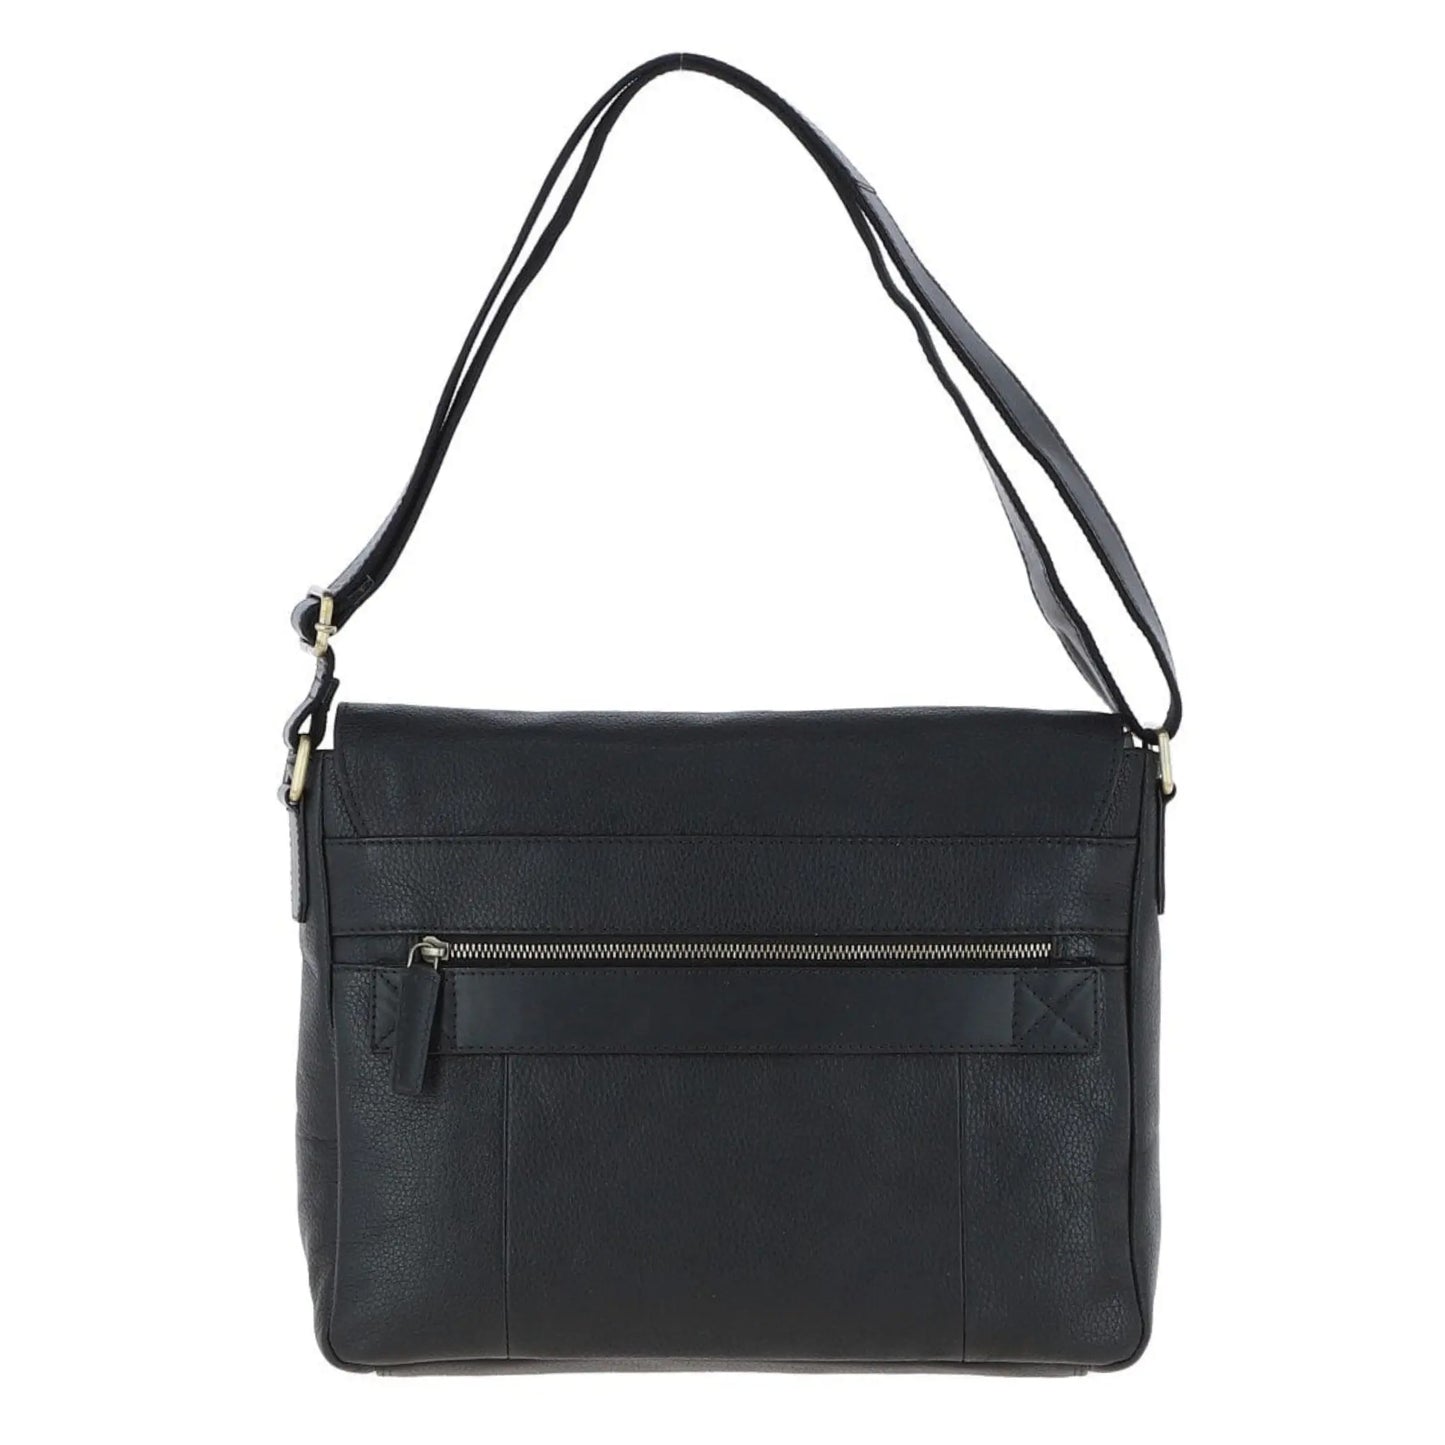 Buy Gabicci Vintage Blake Leather Laptop Bag - Black | Wash Bags at Woven Durham